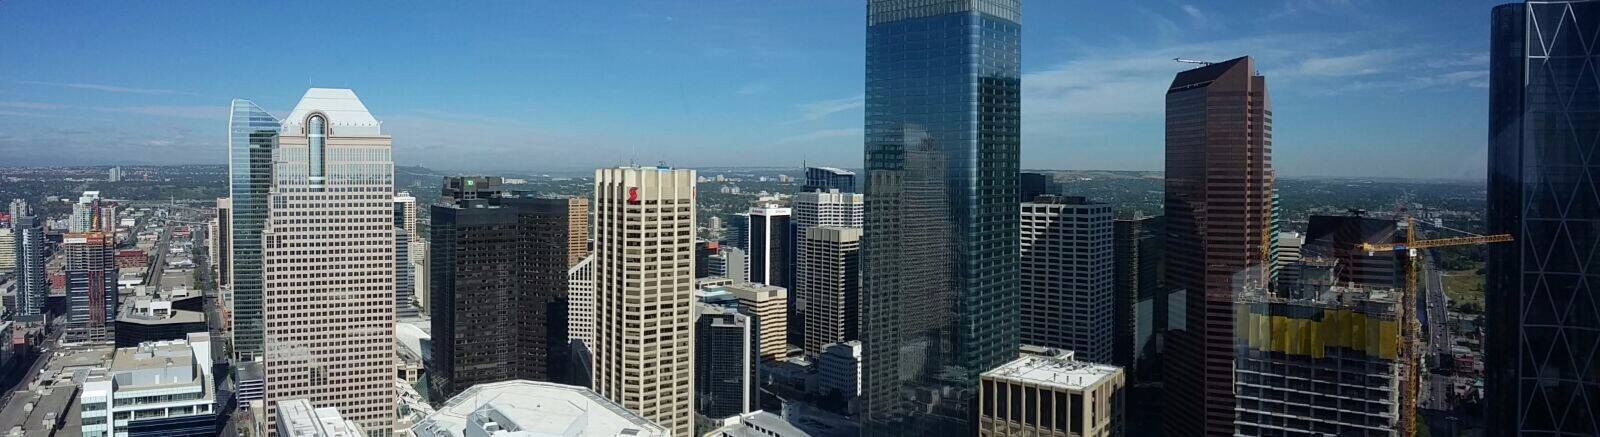 Uitzicht vanaf Calgary Tower 